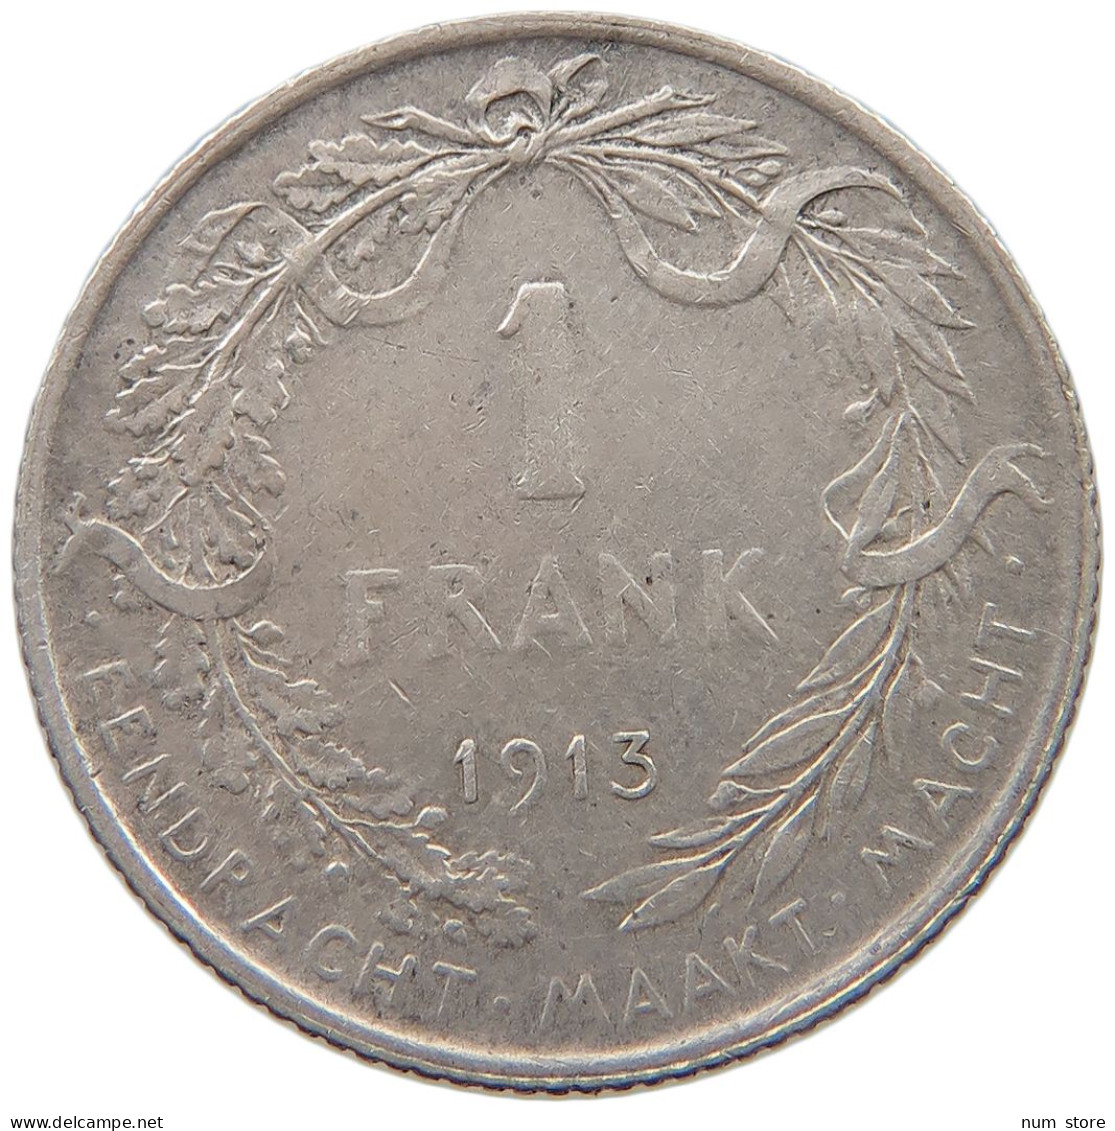 BELGIUM FRANC 1913 Albert I. 1909-1934 #c007 0451 - 1 Franco